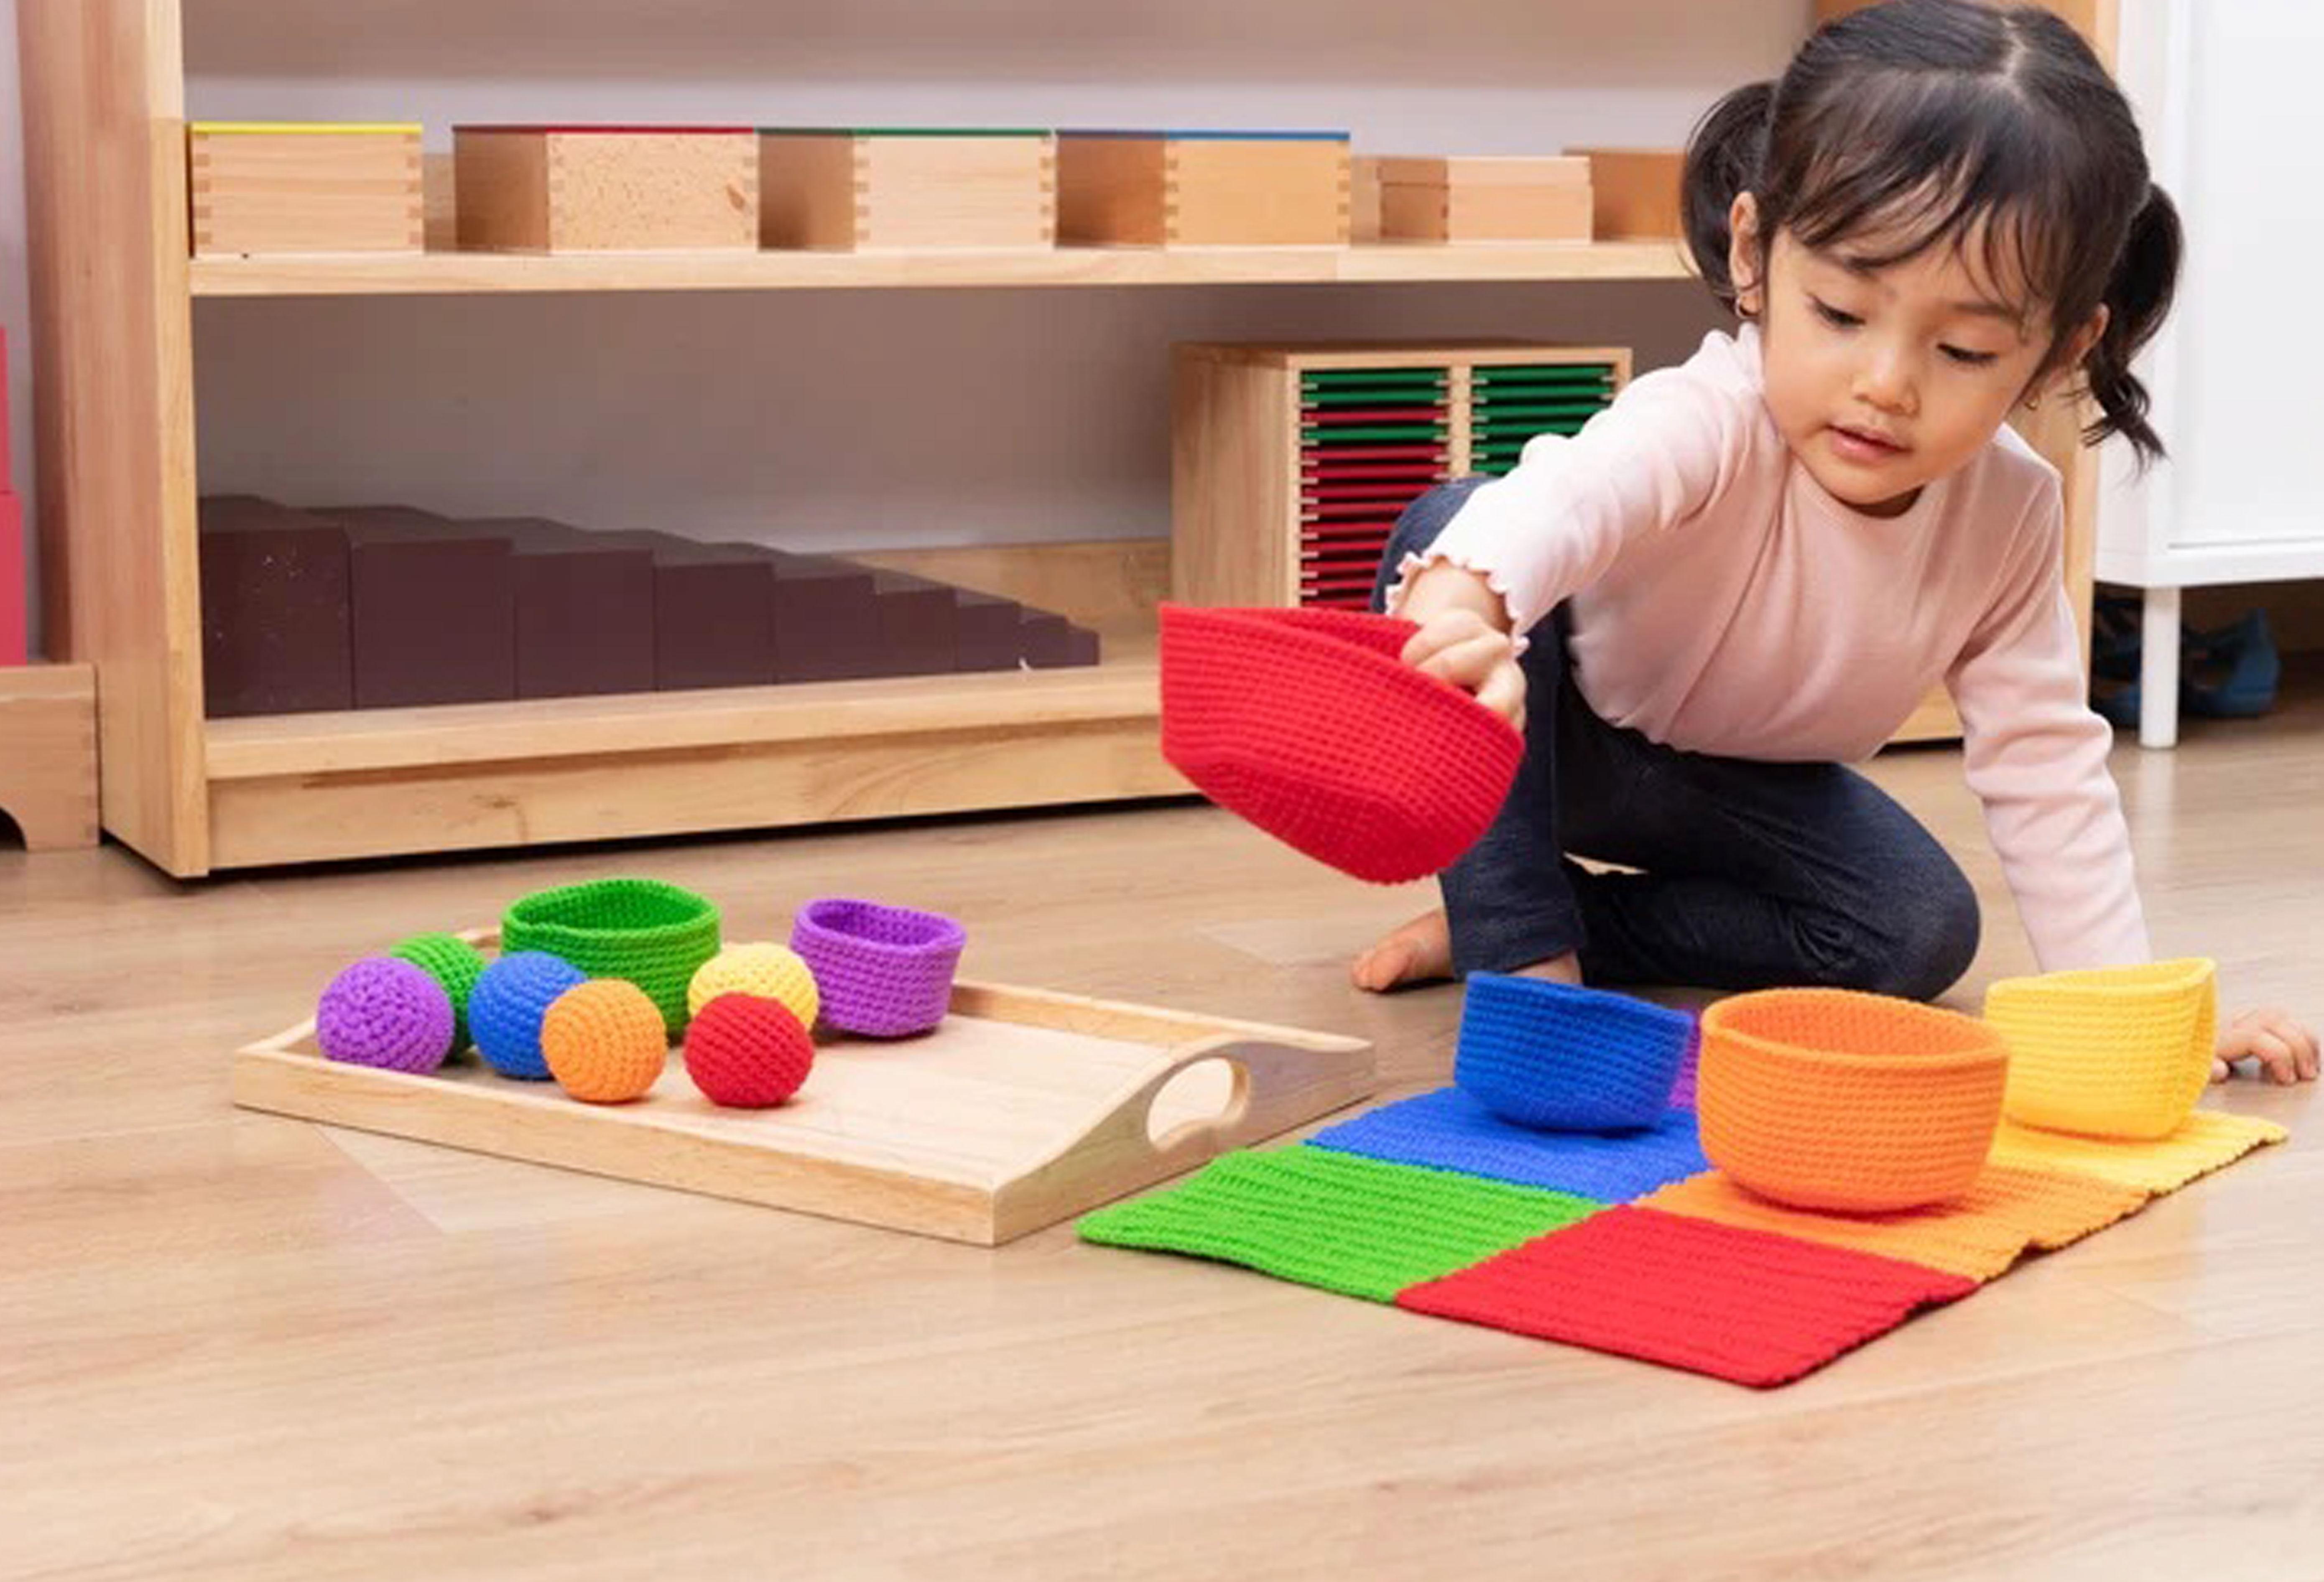 Montessori Activities - Sorting